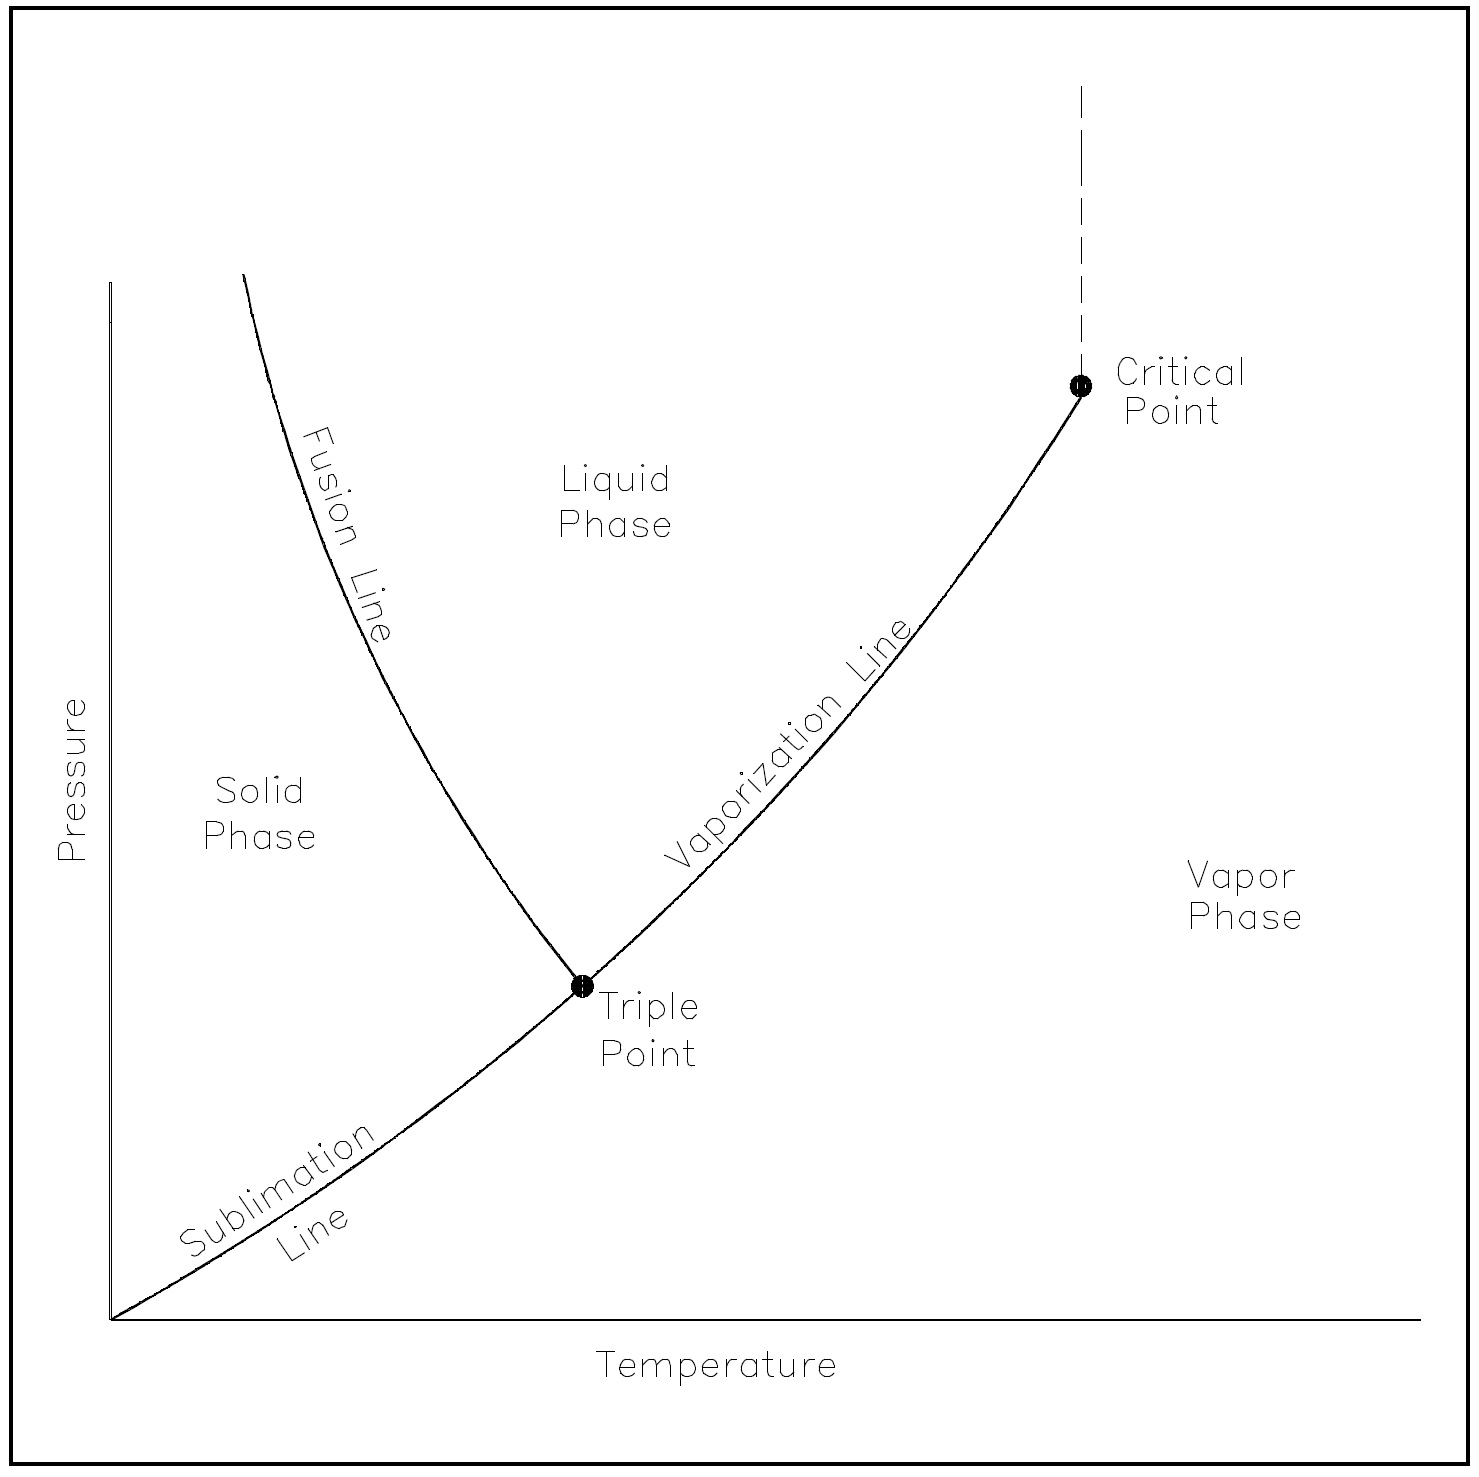 Figure 8: Pressure-Temperature Diagram